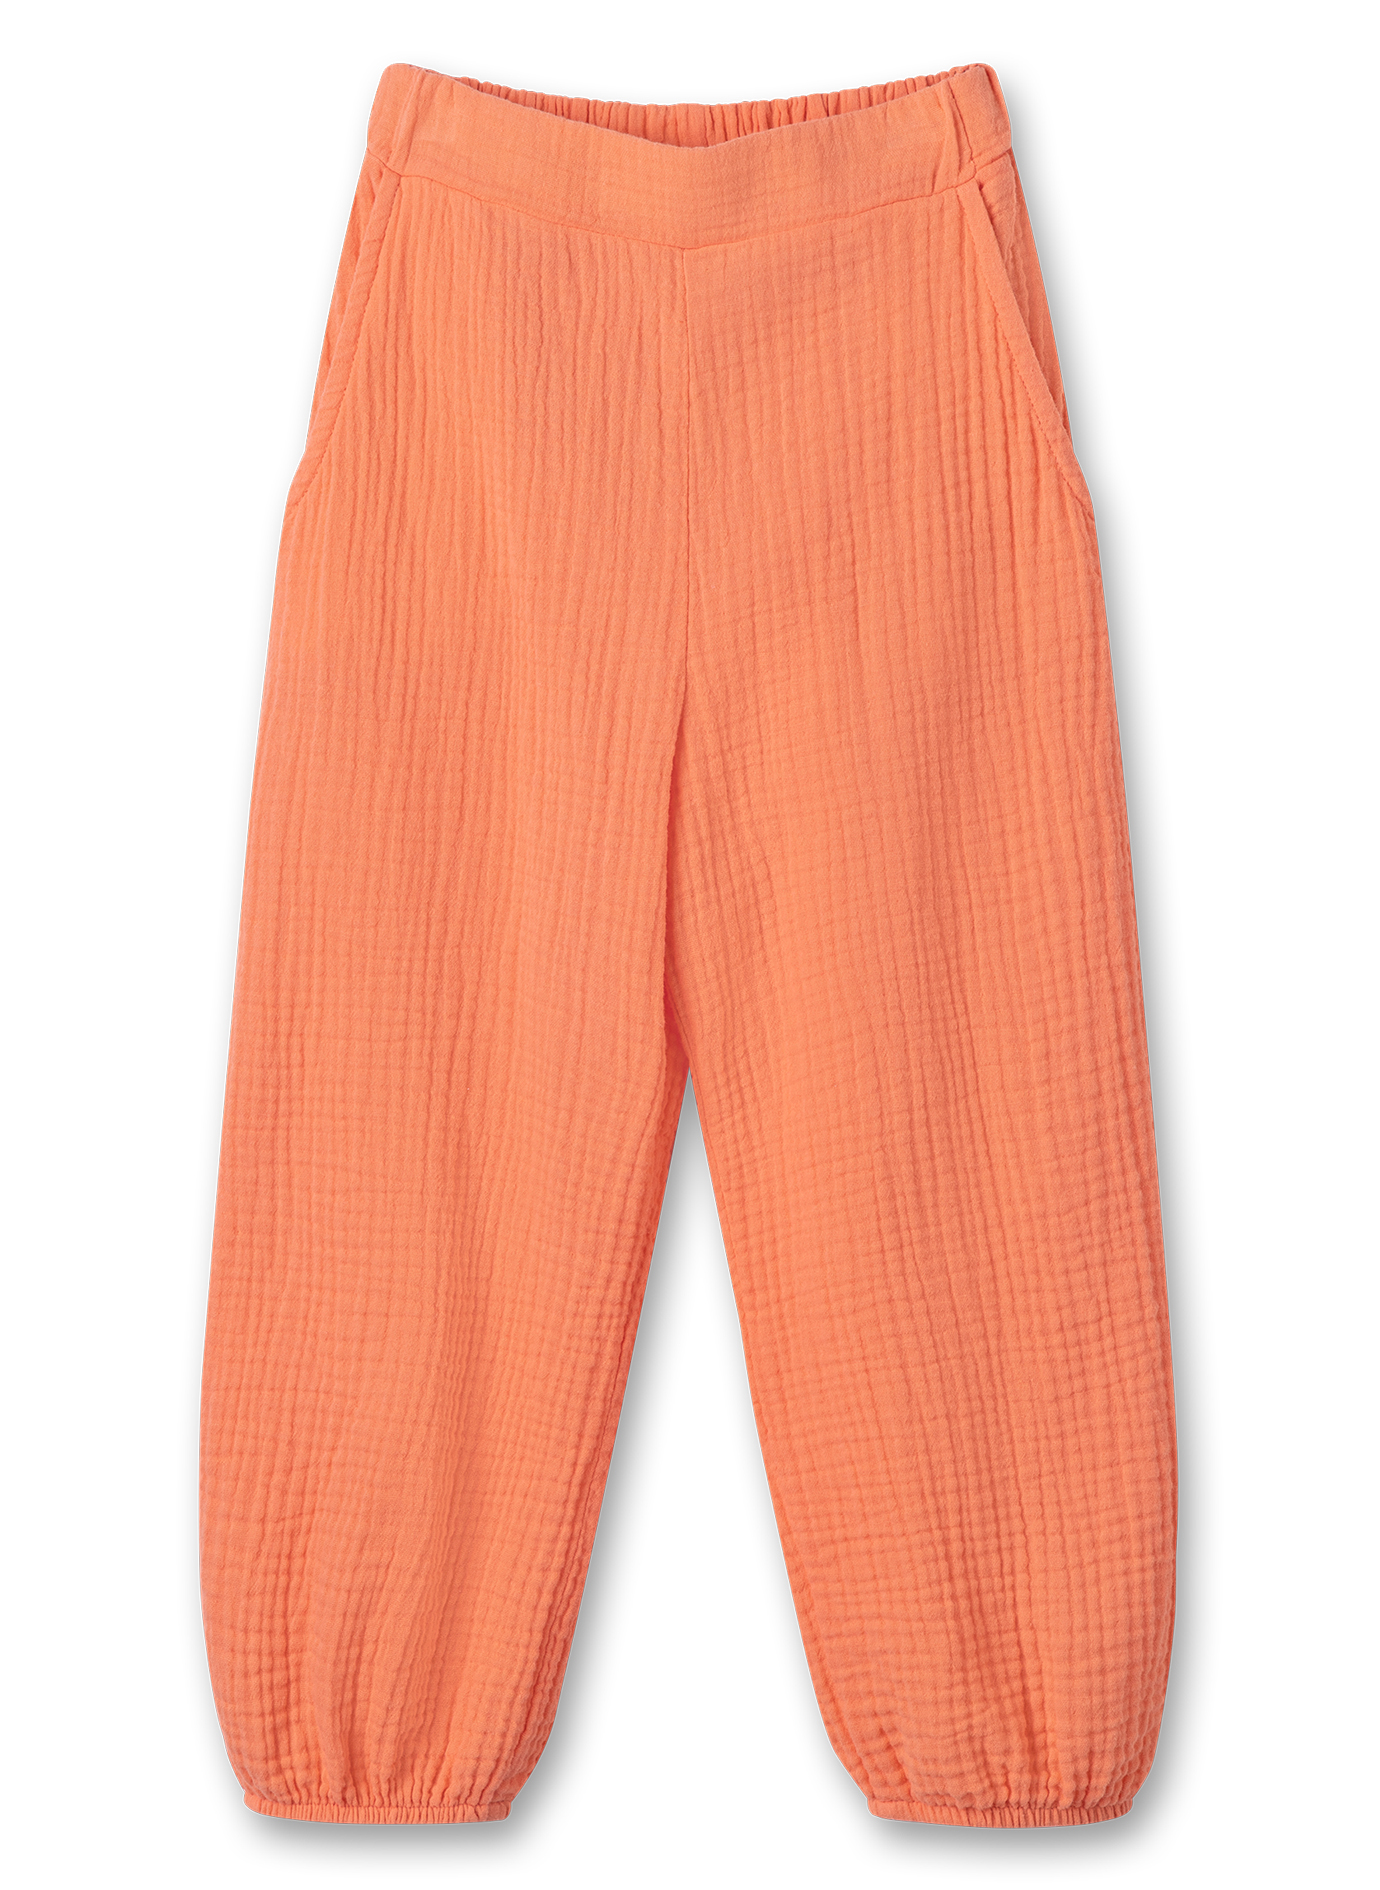 Mädchen-Hose aus Musselin Orange